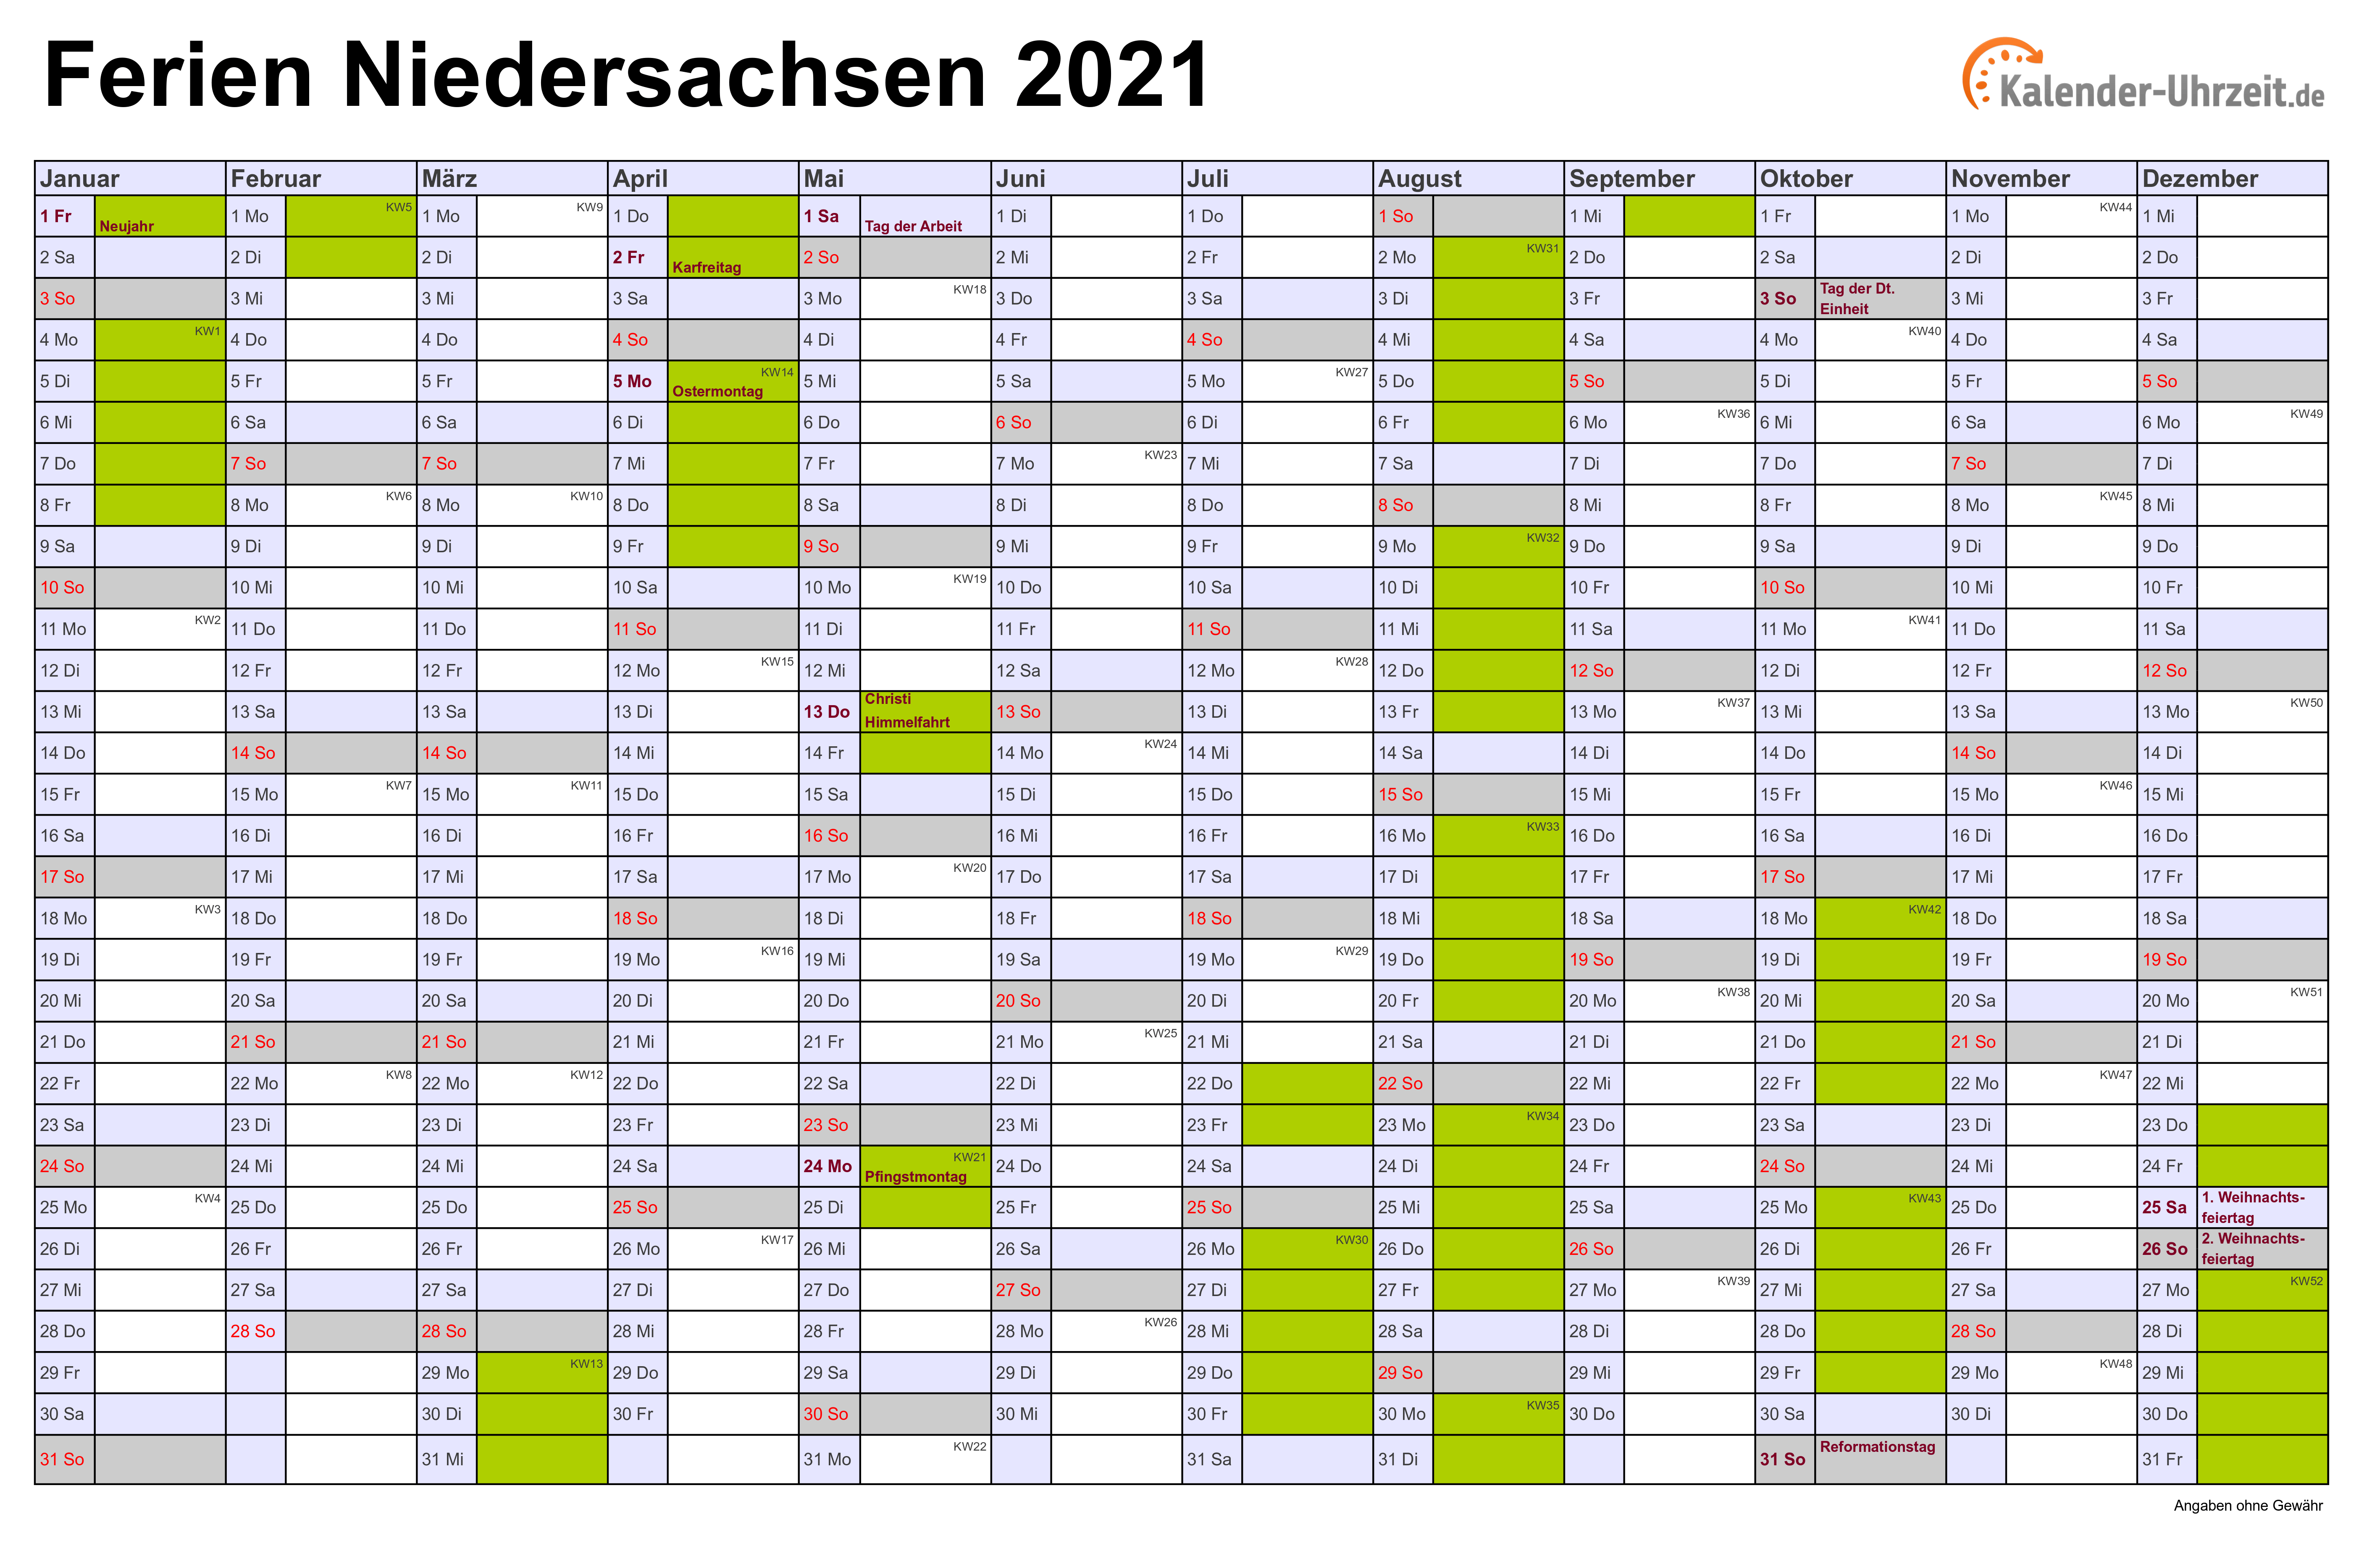 Ferien Niedersachsen 2021 - Ferienkalender zum Ausdrucken